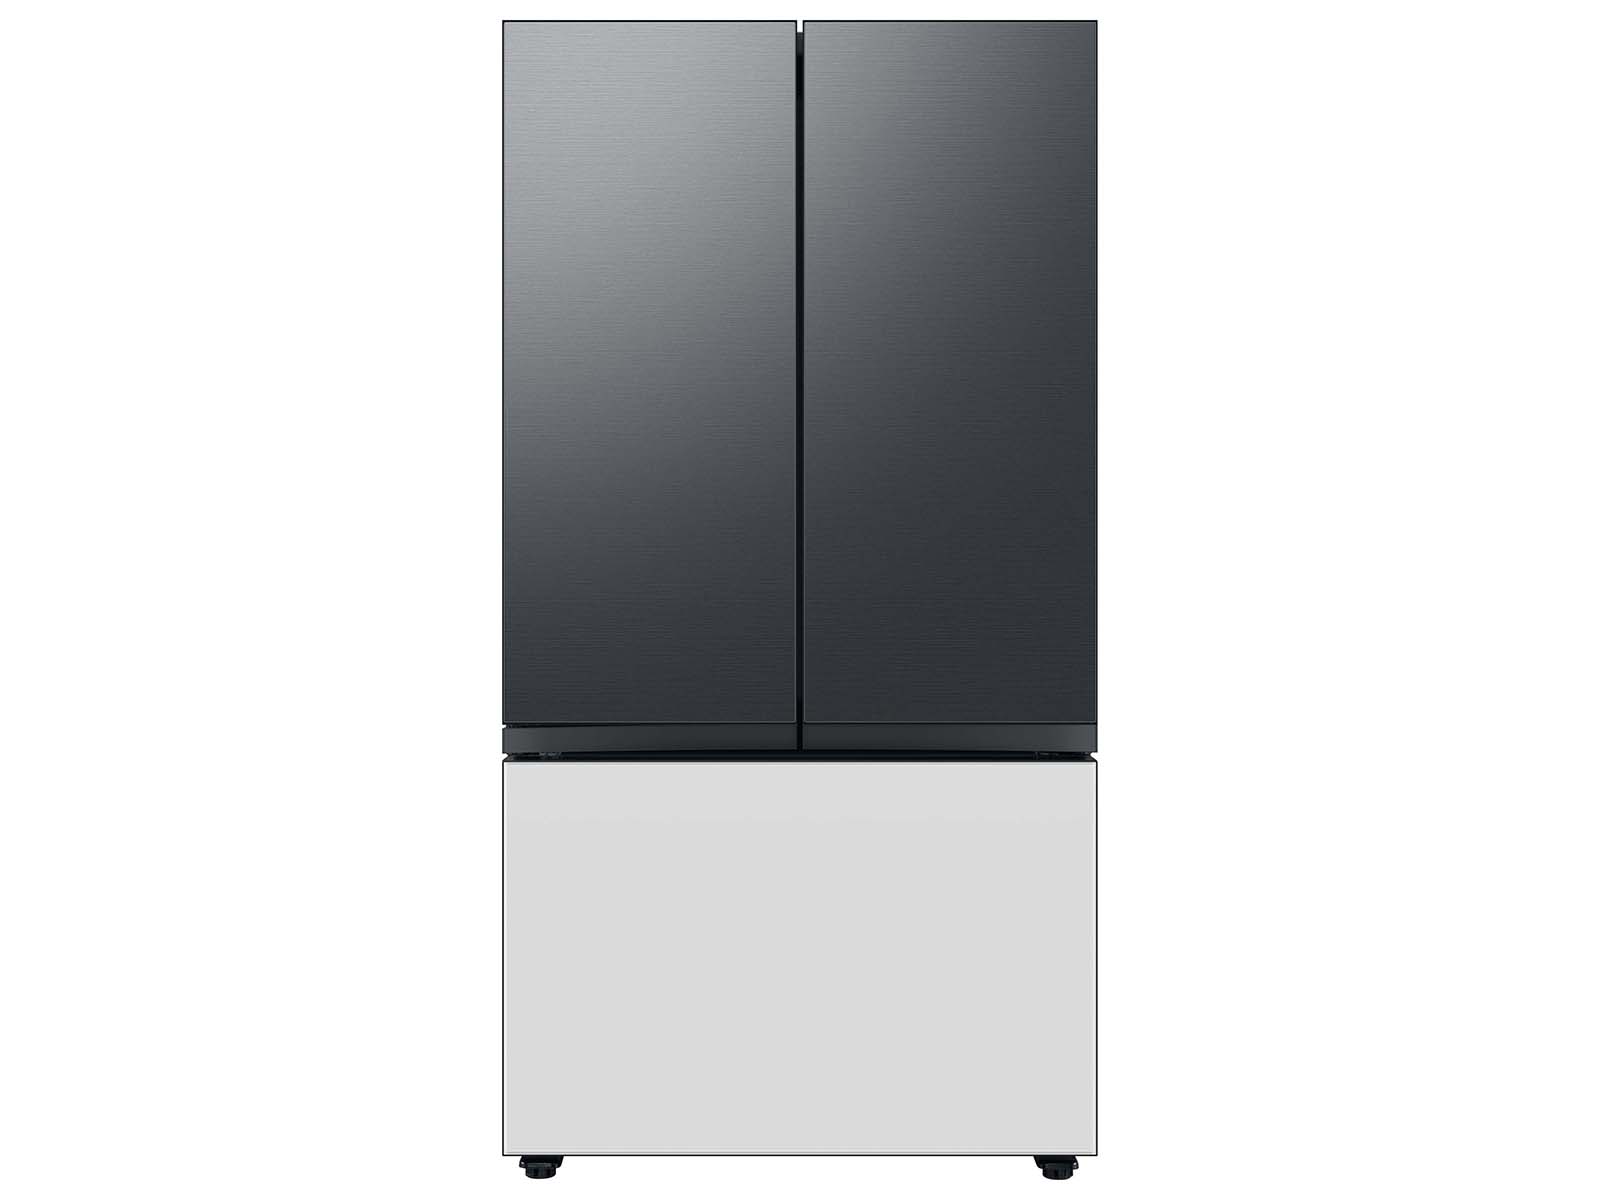 Thumbnail image of Bespoke 3-Door French Door Refrigerator Panel in Matte Black Steel - Top Panel